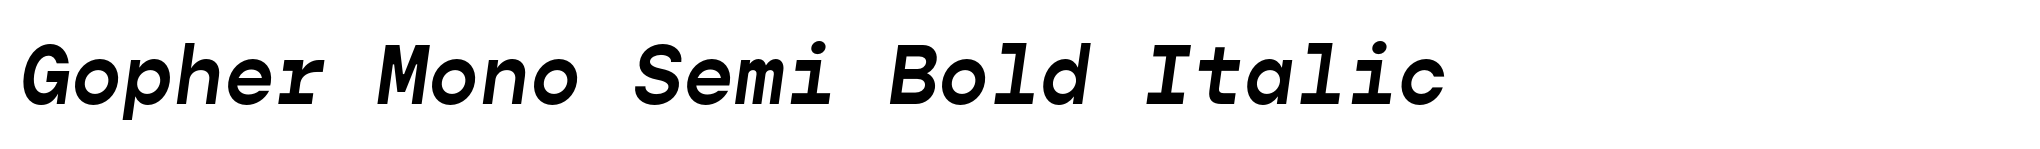 Gopher Mono Semi Bold Italic image